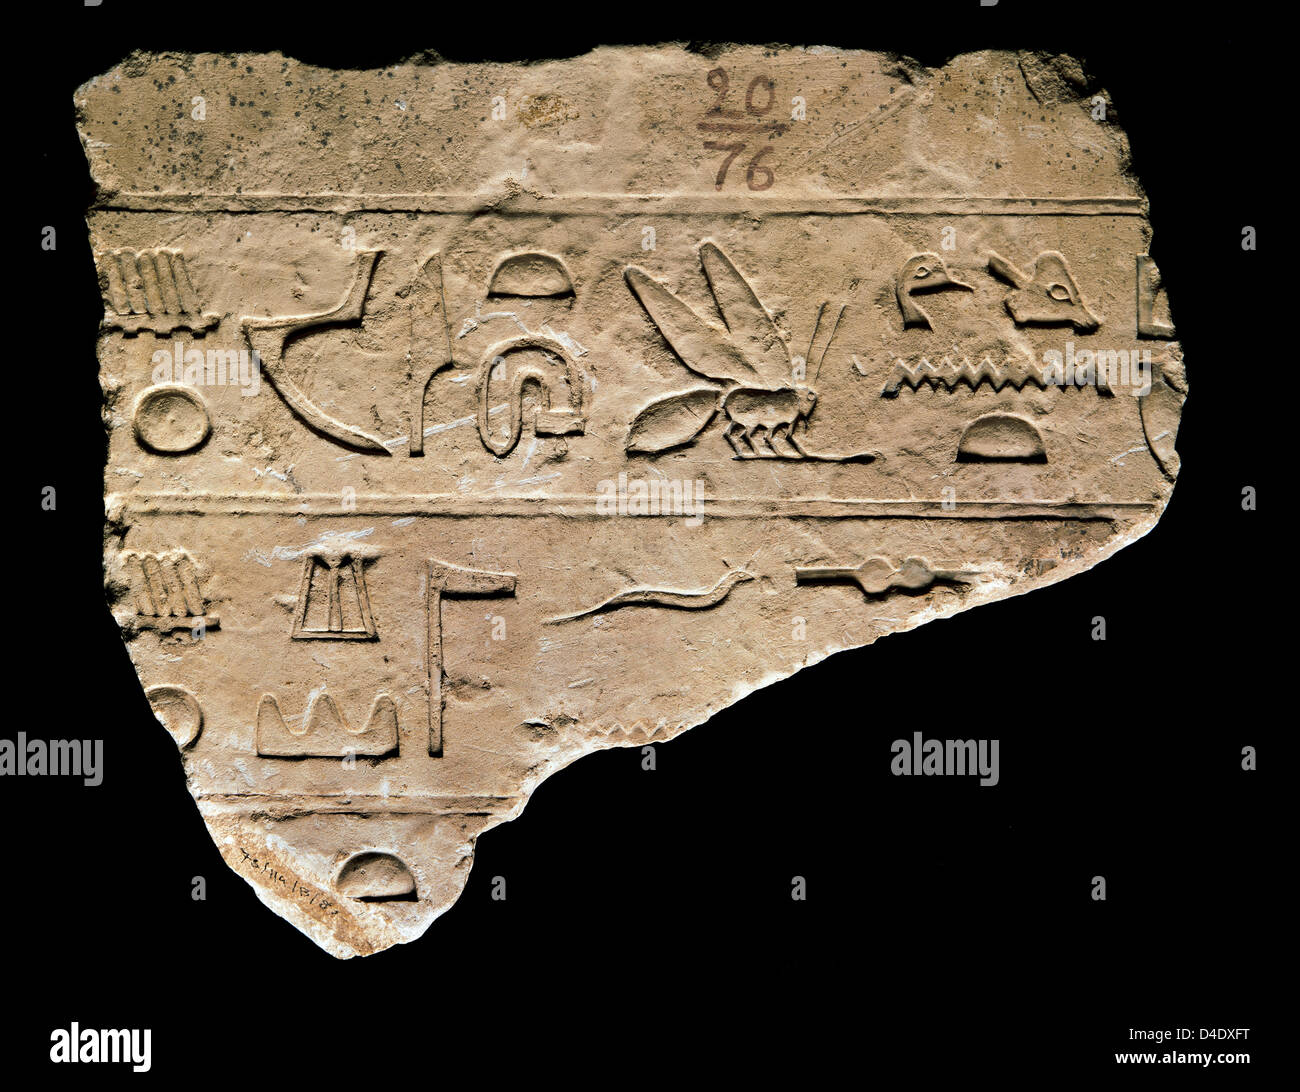 Detalle de un arte egipcio jeroglífico. Grabado en piedra. Museo Arqueológico Nacional. Madrid. España. Foto de stock